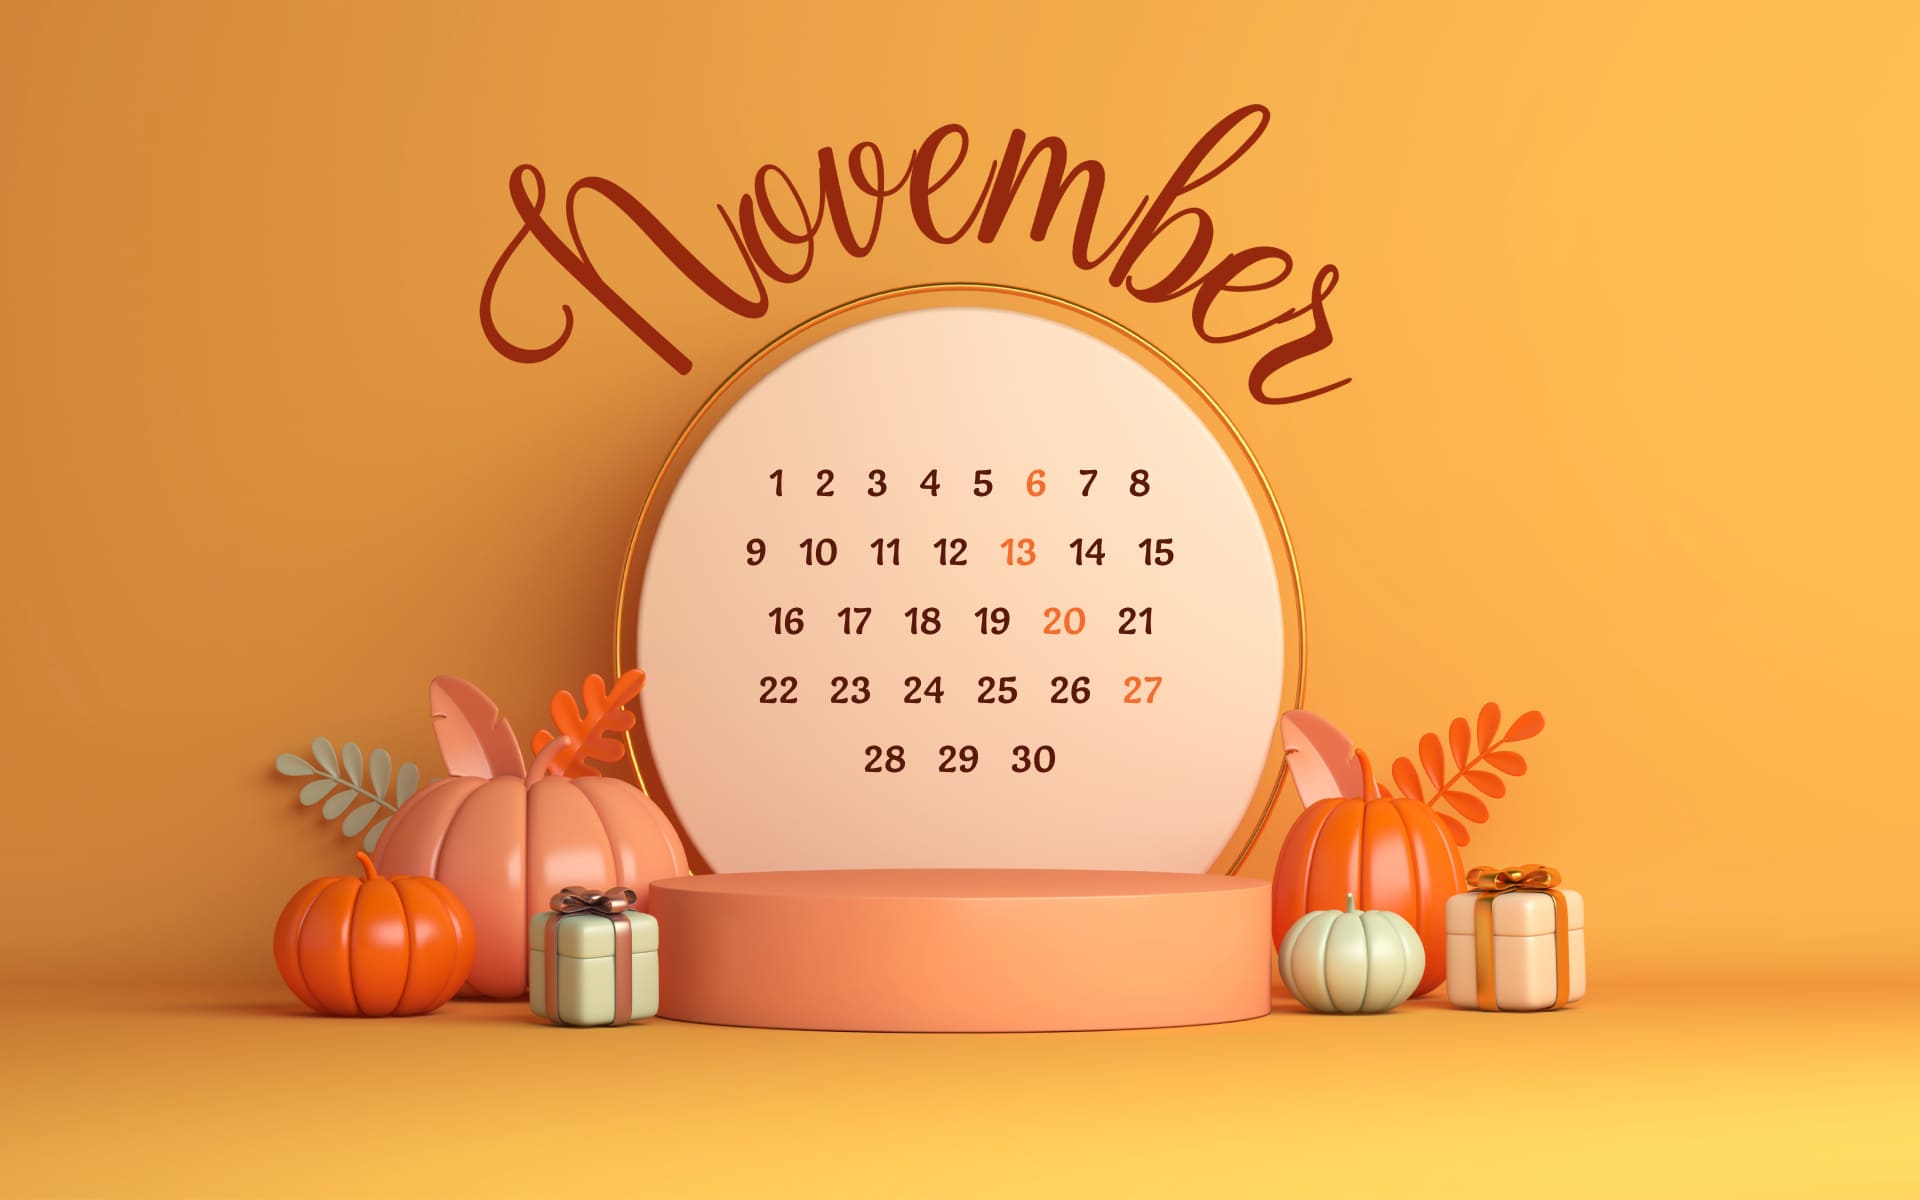 Free November calendar extension 1920х1200.